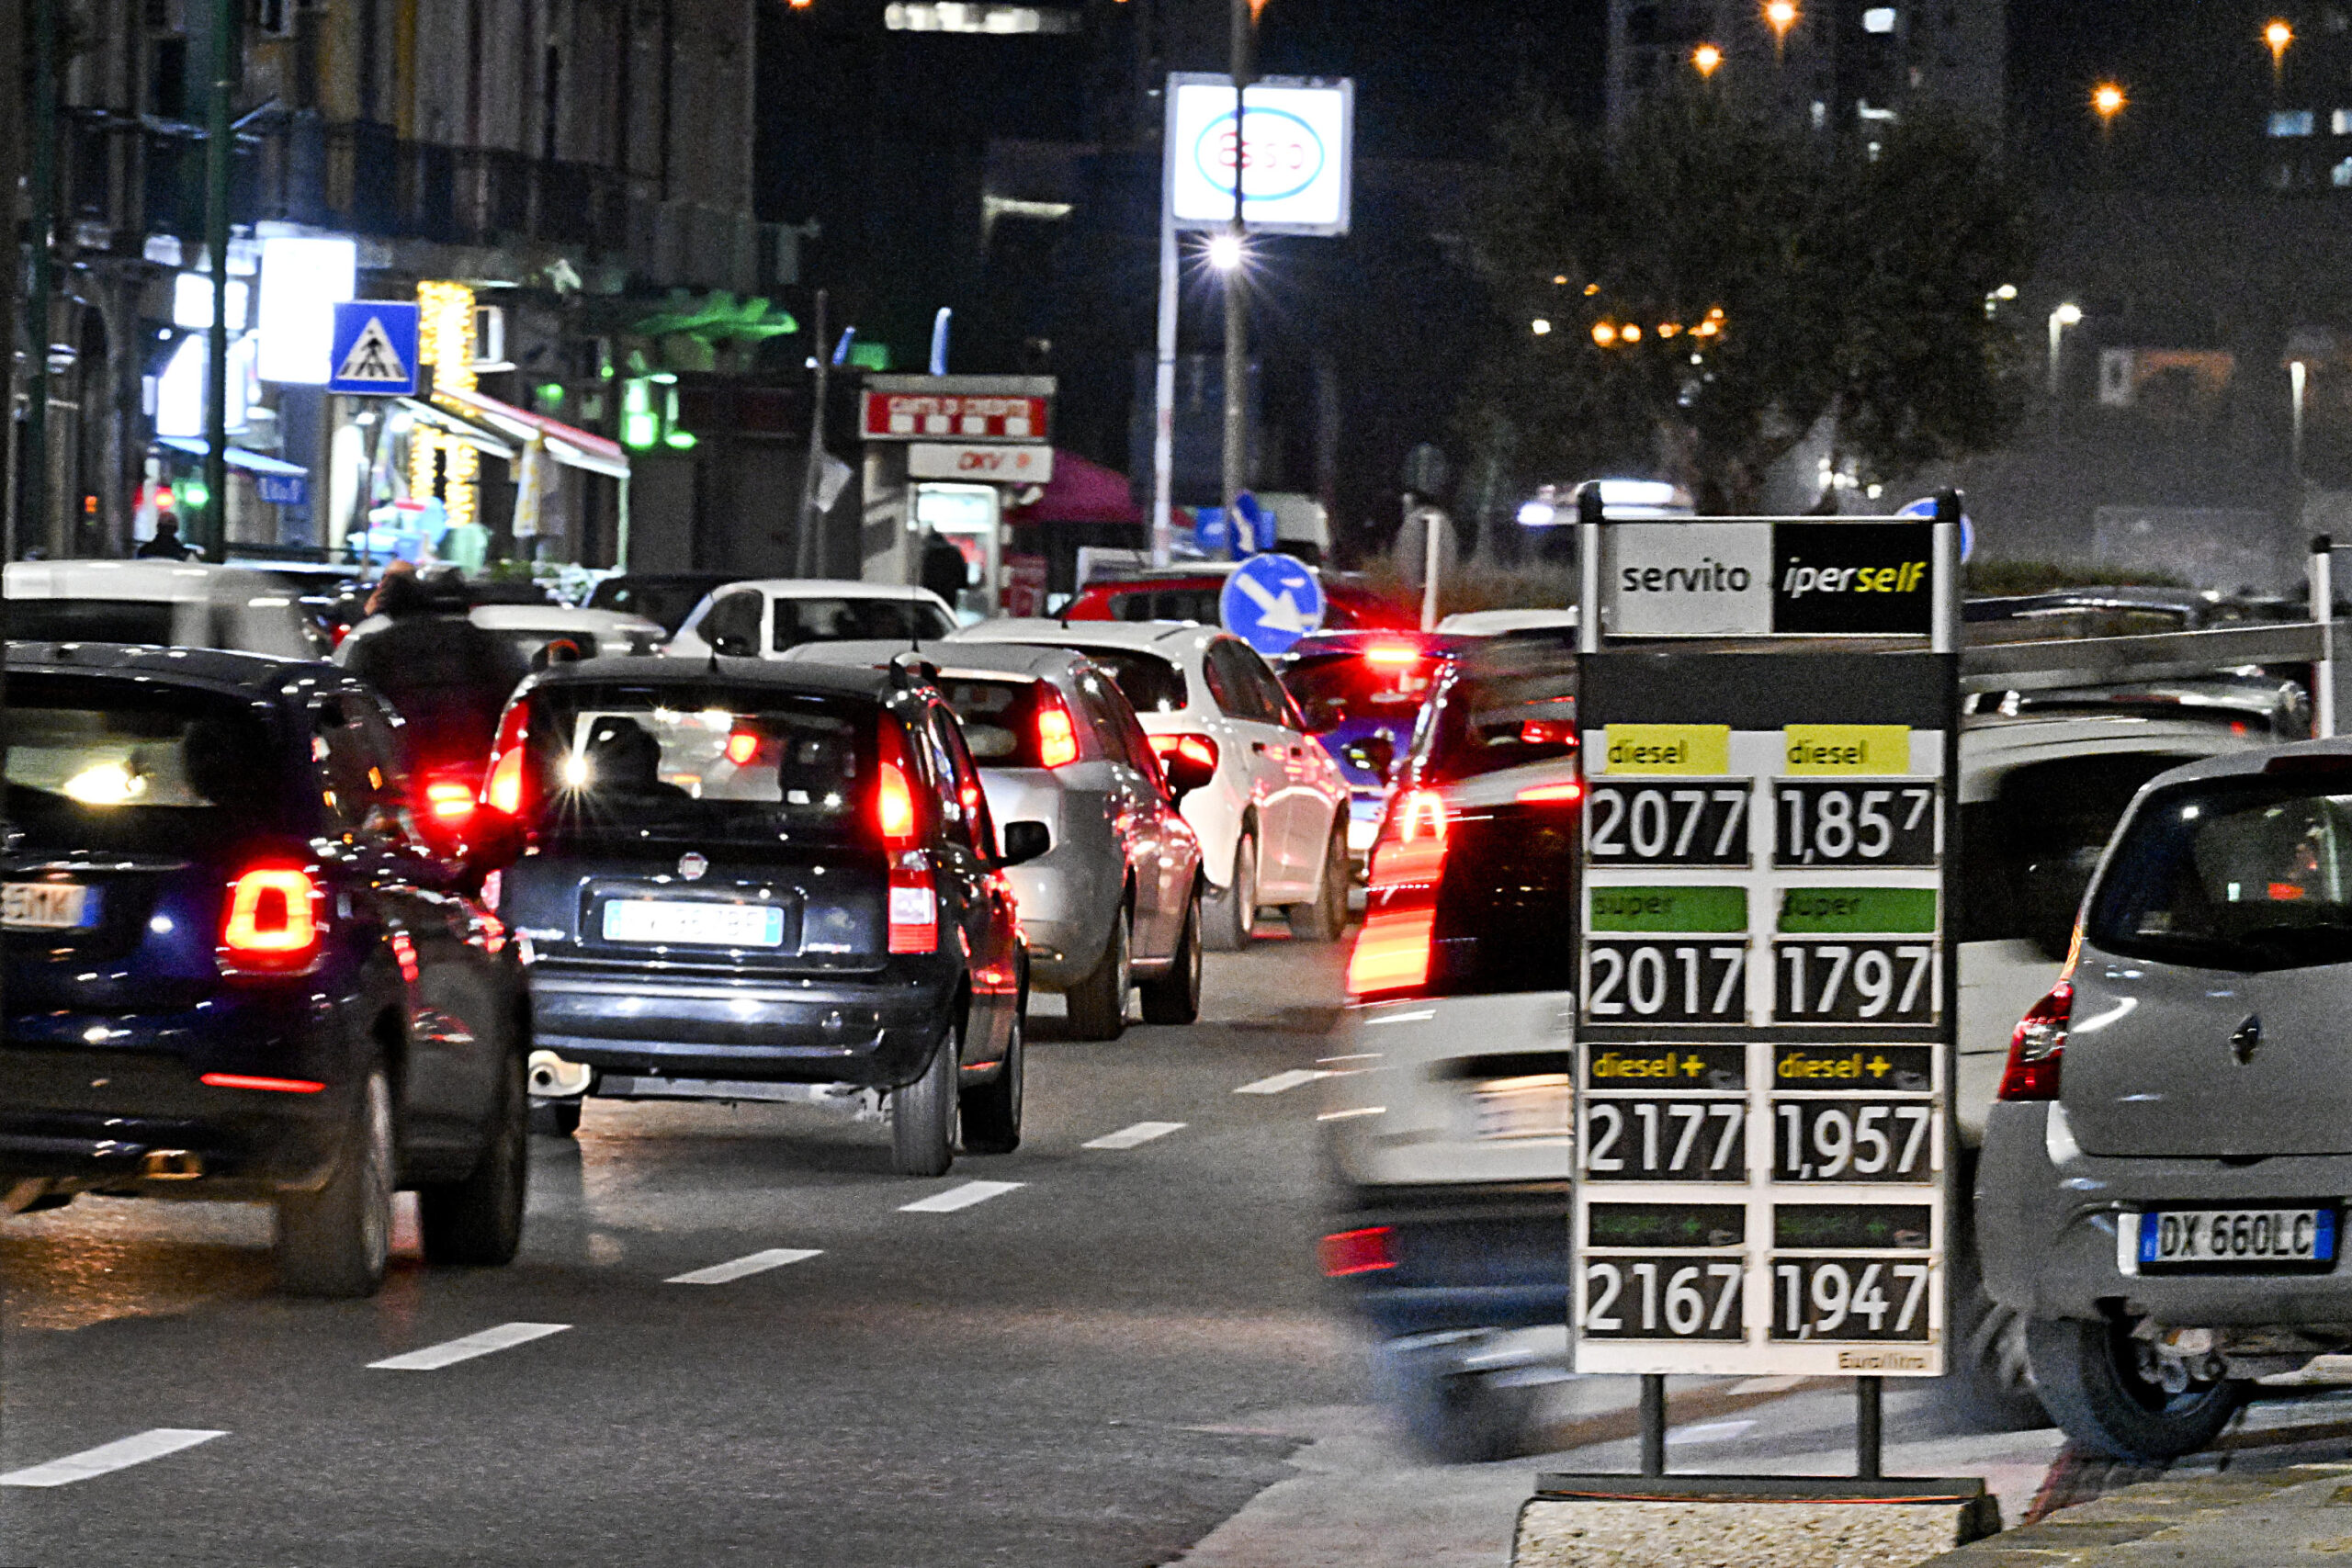 Un distributore in via Gianturco a Napoli espone i prezzi dei carburanti  dove si legge che un litro di benzina 'Servito' ha superato la soglia dei due euro, 11 gennaio 2023. ANSA / CIRO FUSCO